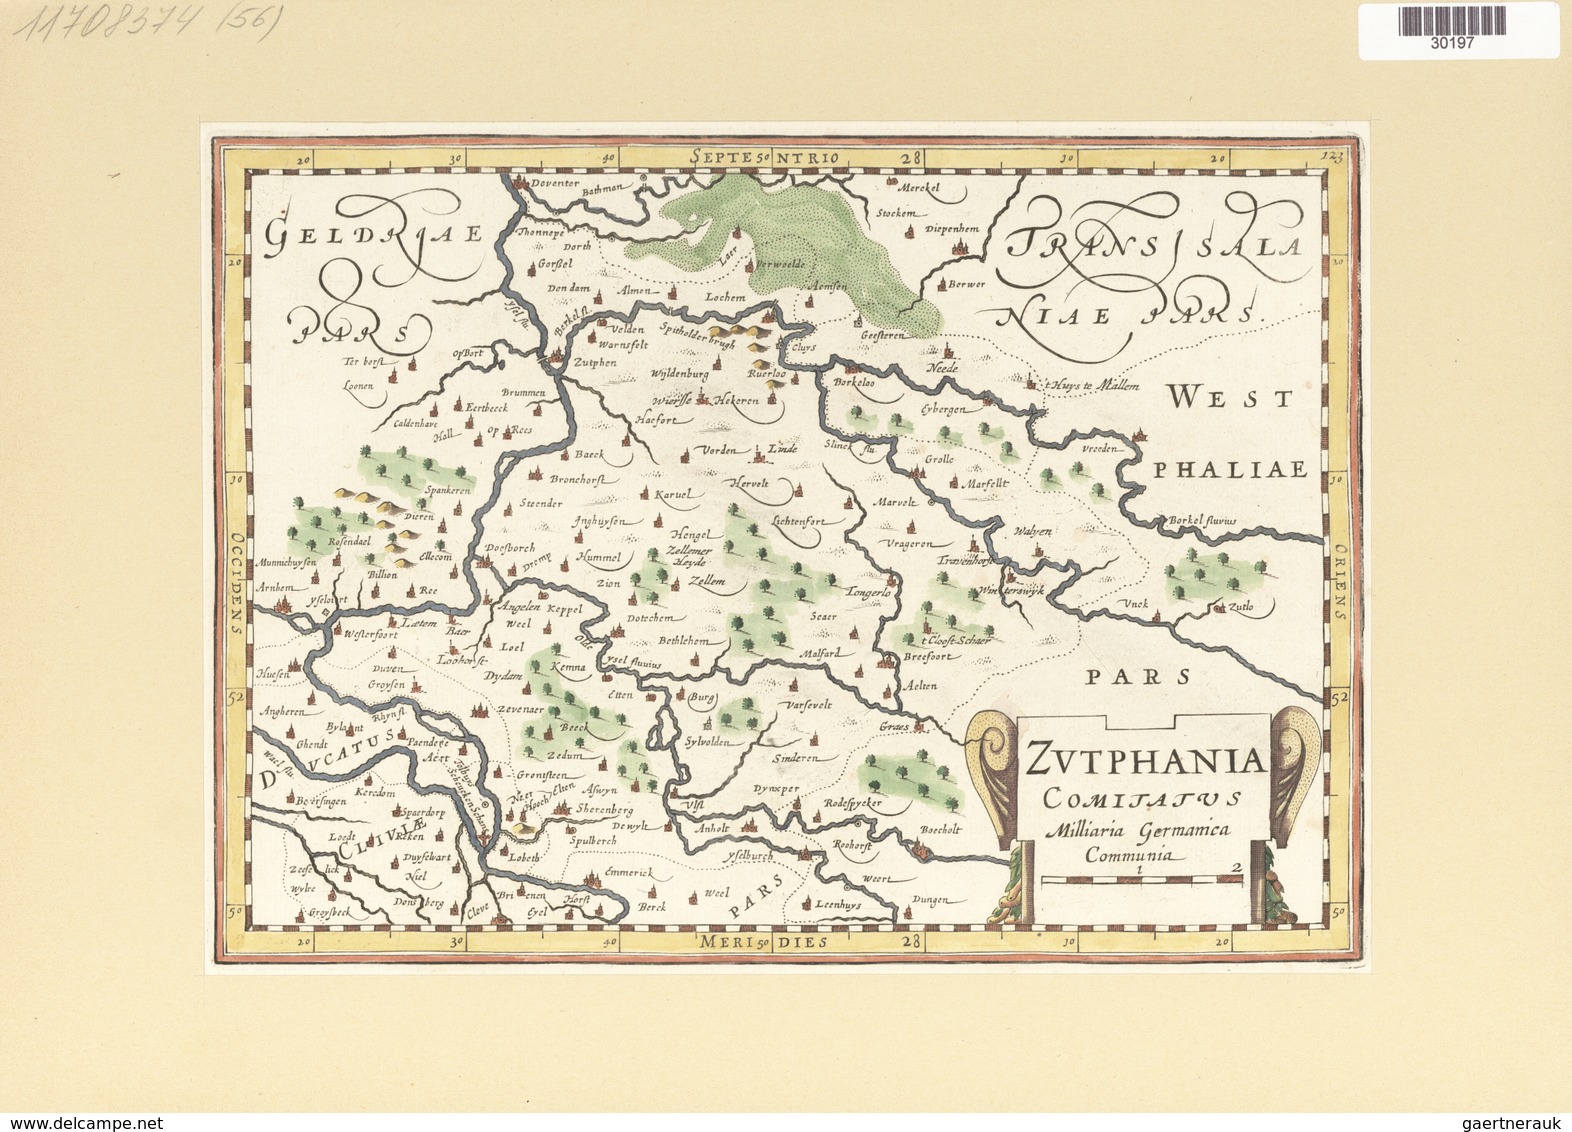 Landkarten Und Stiche: 1734. Zutphania Comitatus, By Gerardus Mercator Ca 1633, Published In His Atl - Geographie